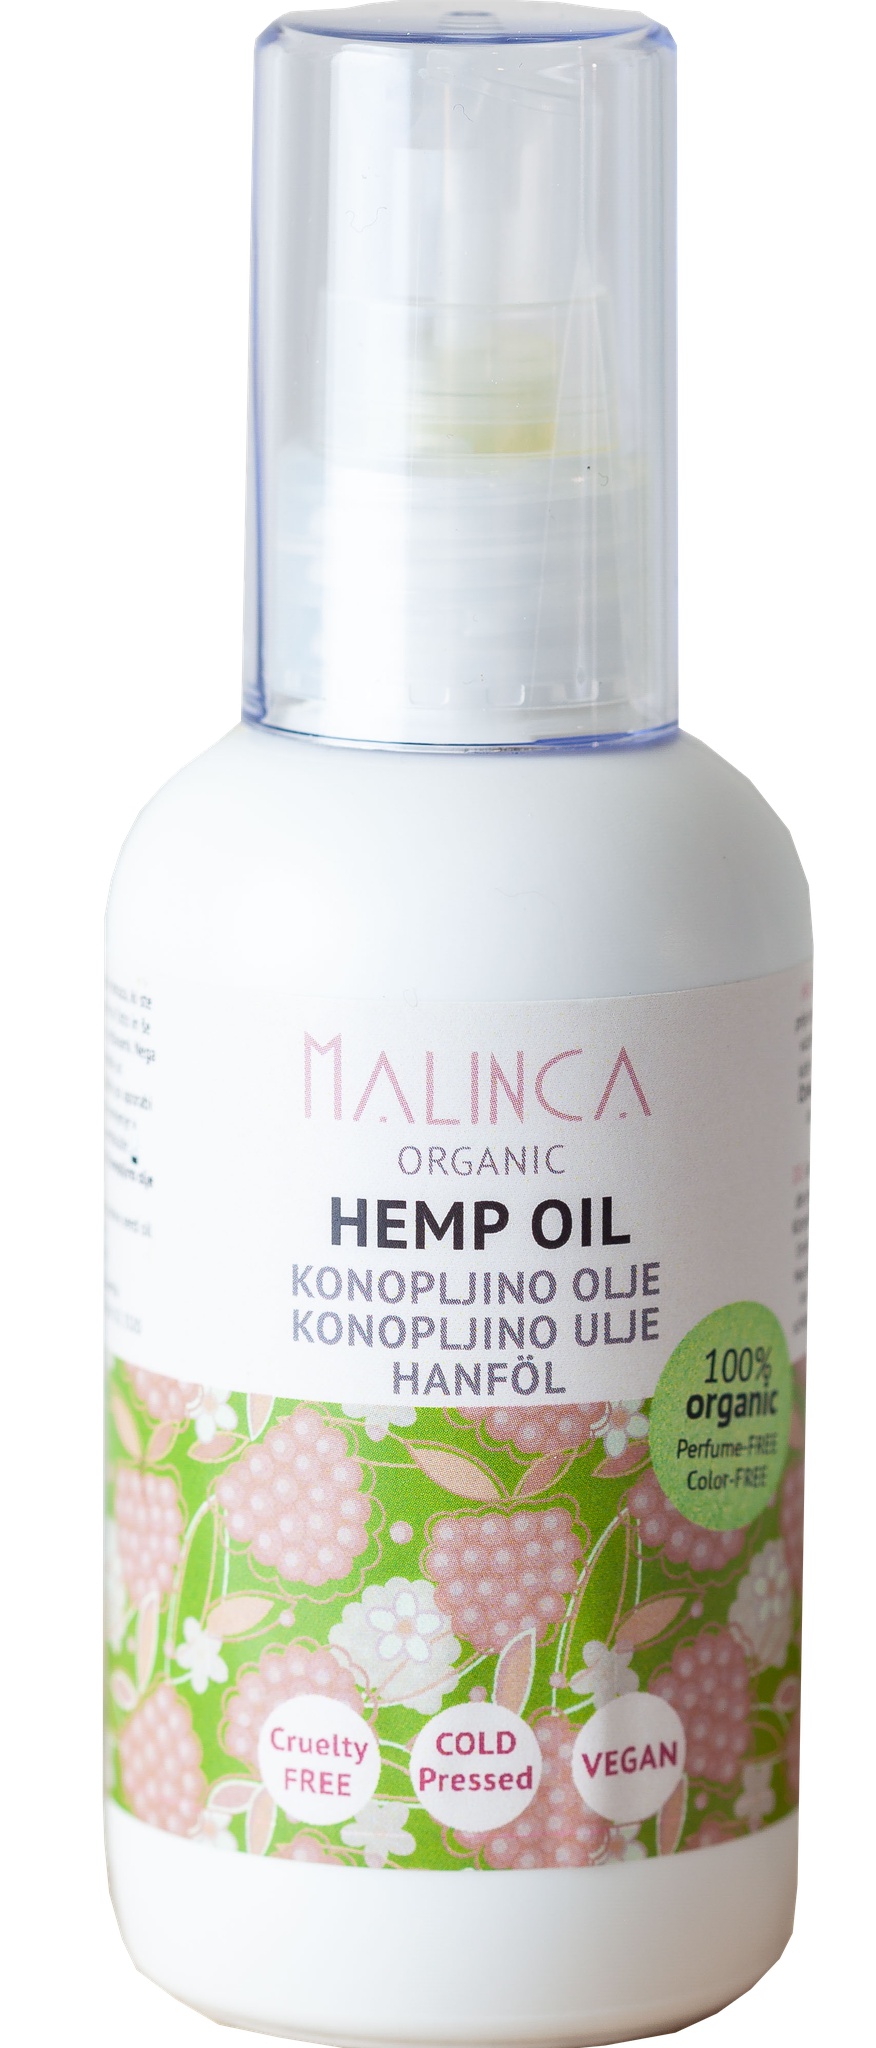 Malinca Organic Hemp Oil